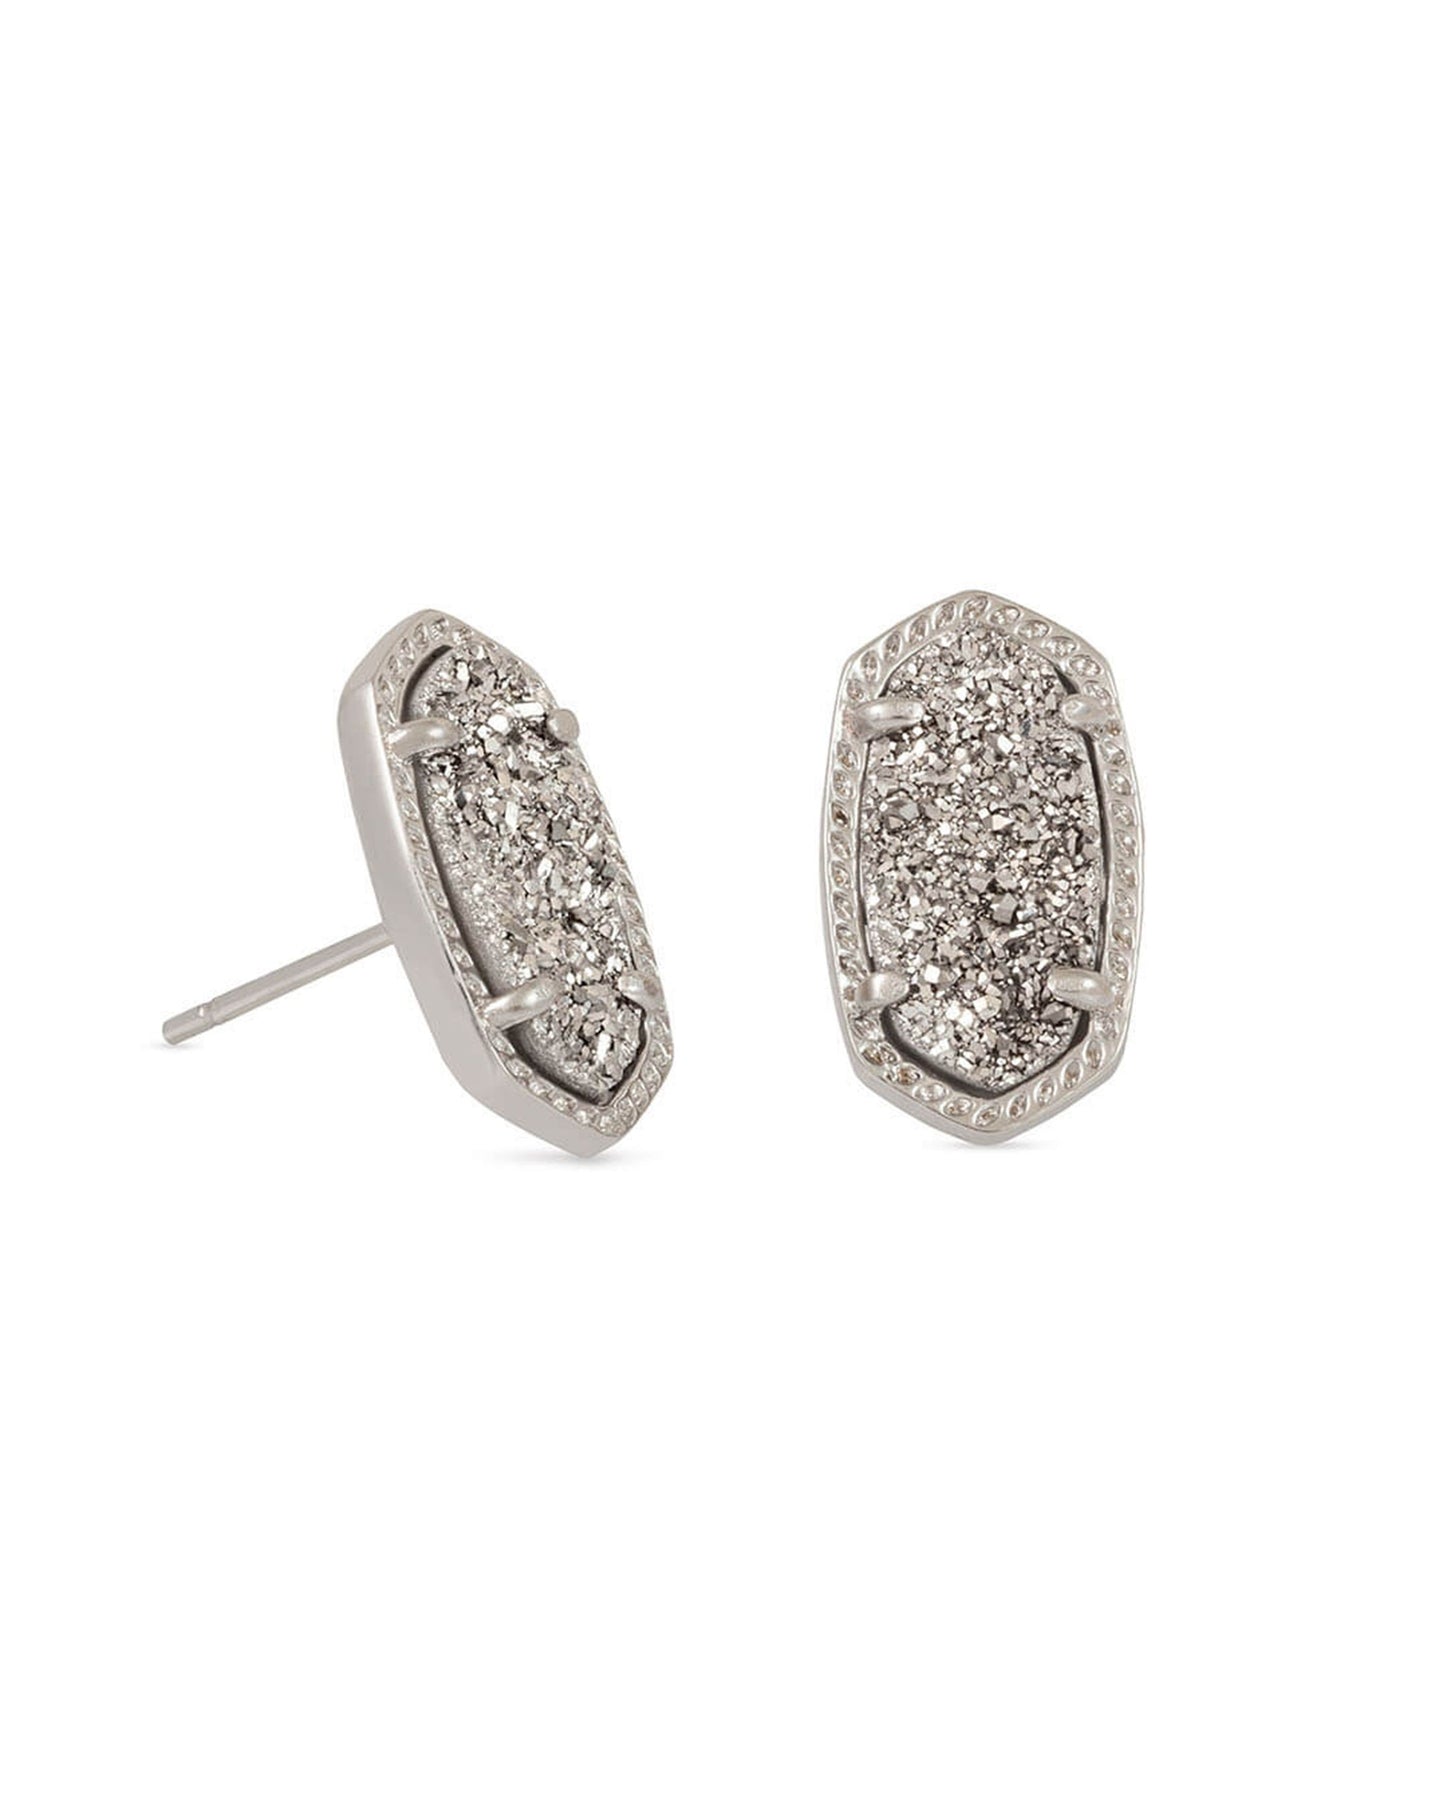 Ellie Silver Stud Earrings in Platinum Drusy